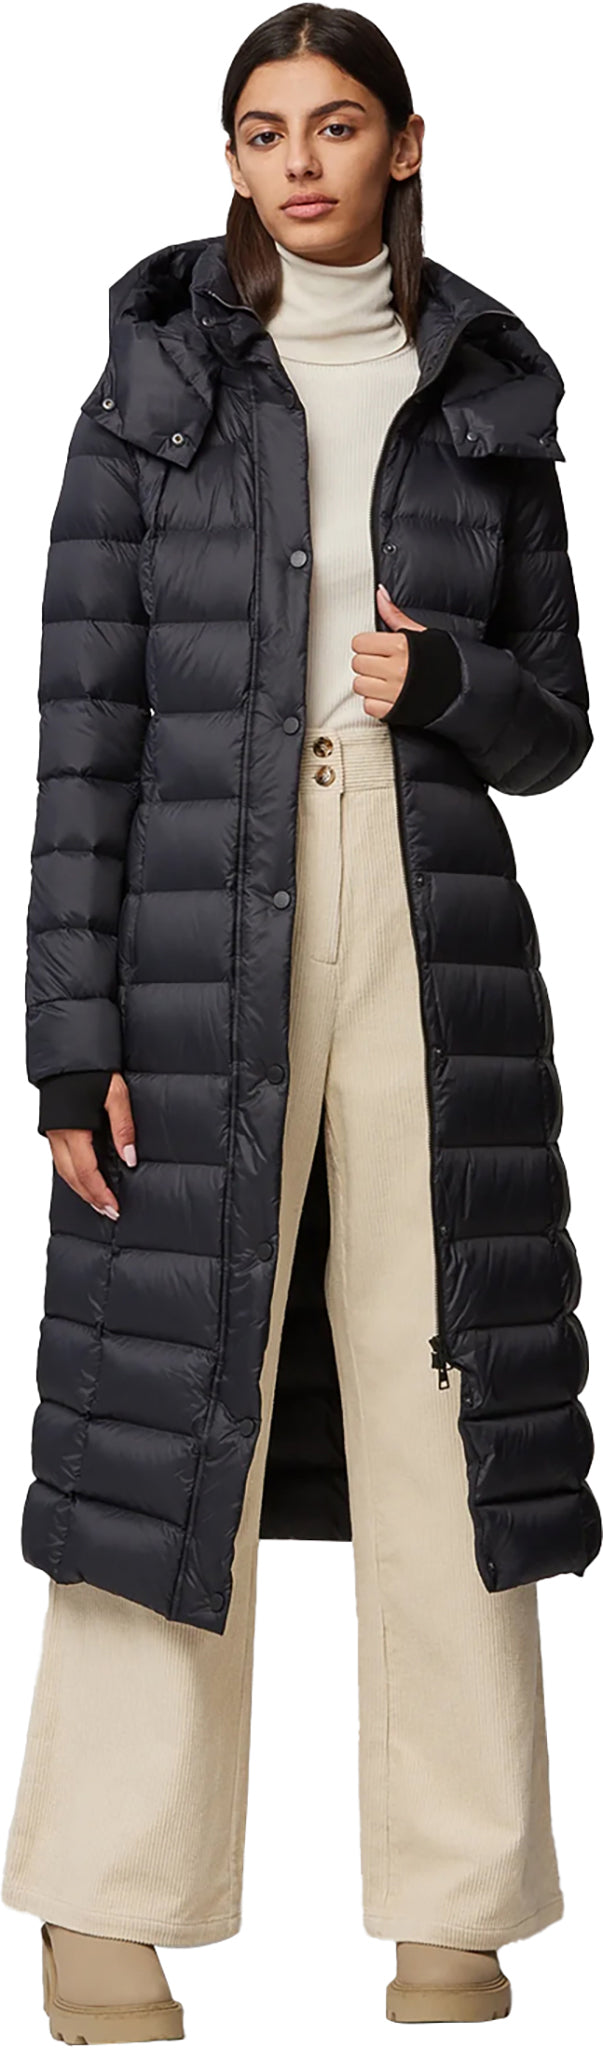 SOIA & KYO Manteau aux mollets en duvet durable avec capuchon Talyse-E -  Femme